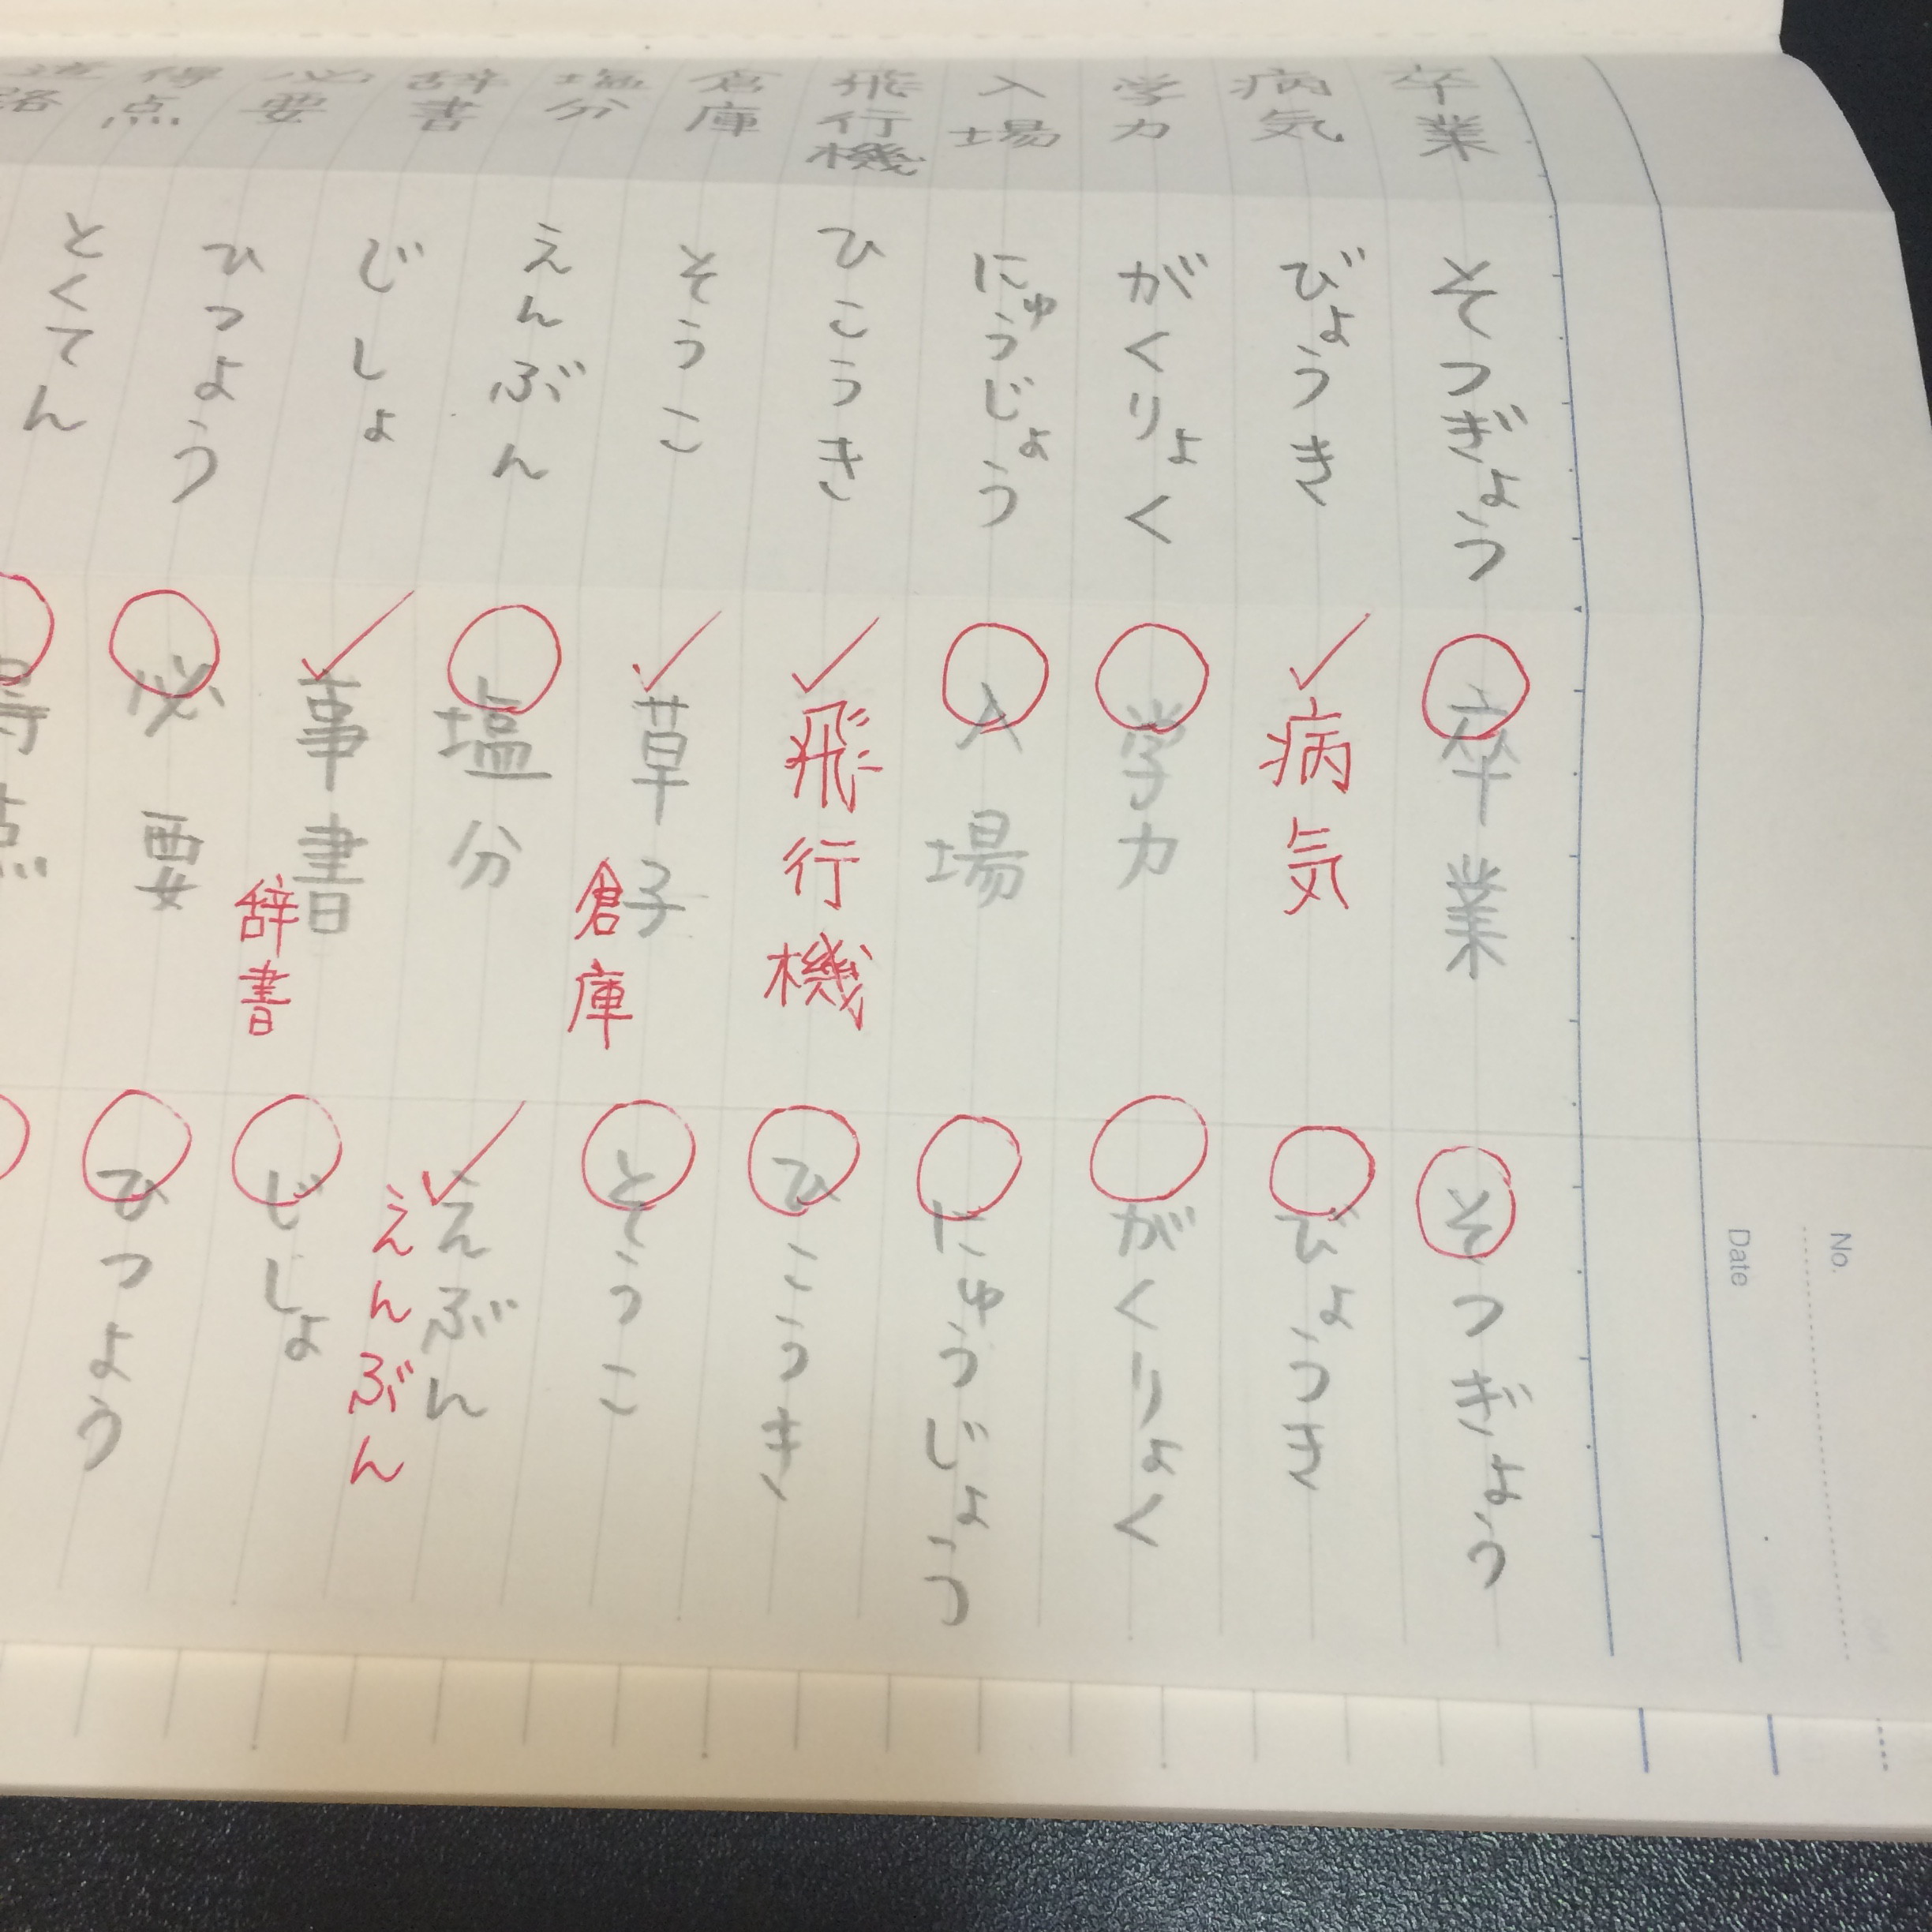 もりのひと小学校 漢字の覚え方 ノート折り単語暗記法